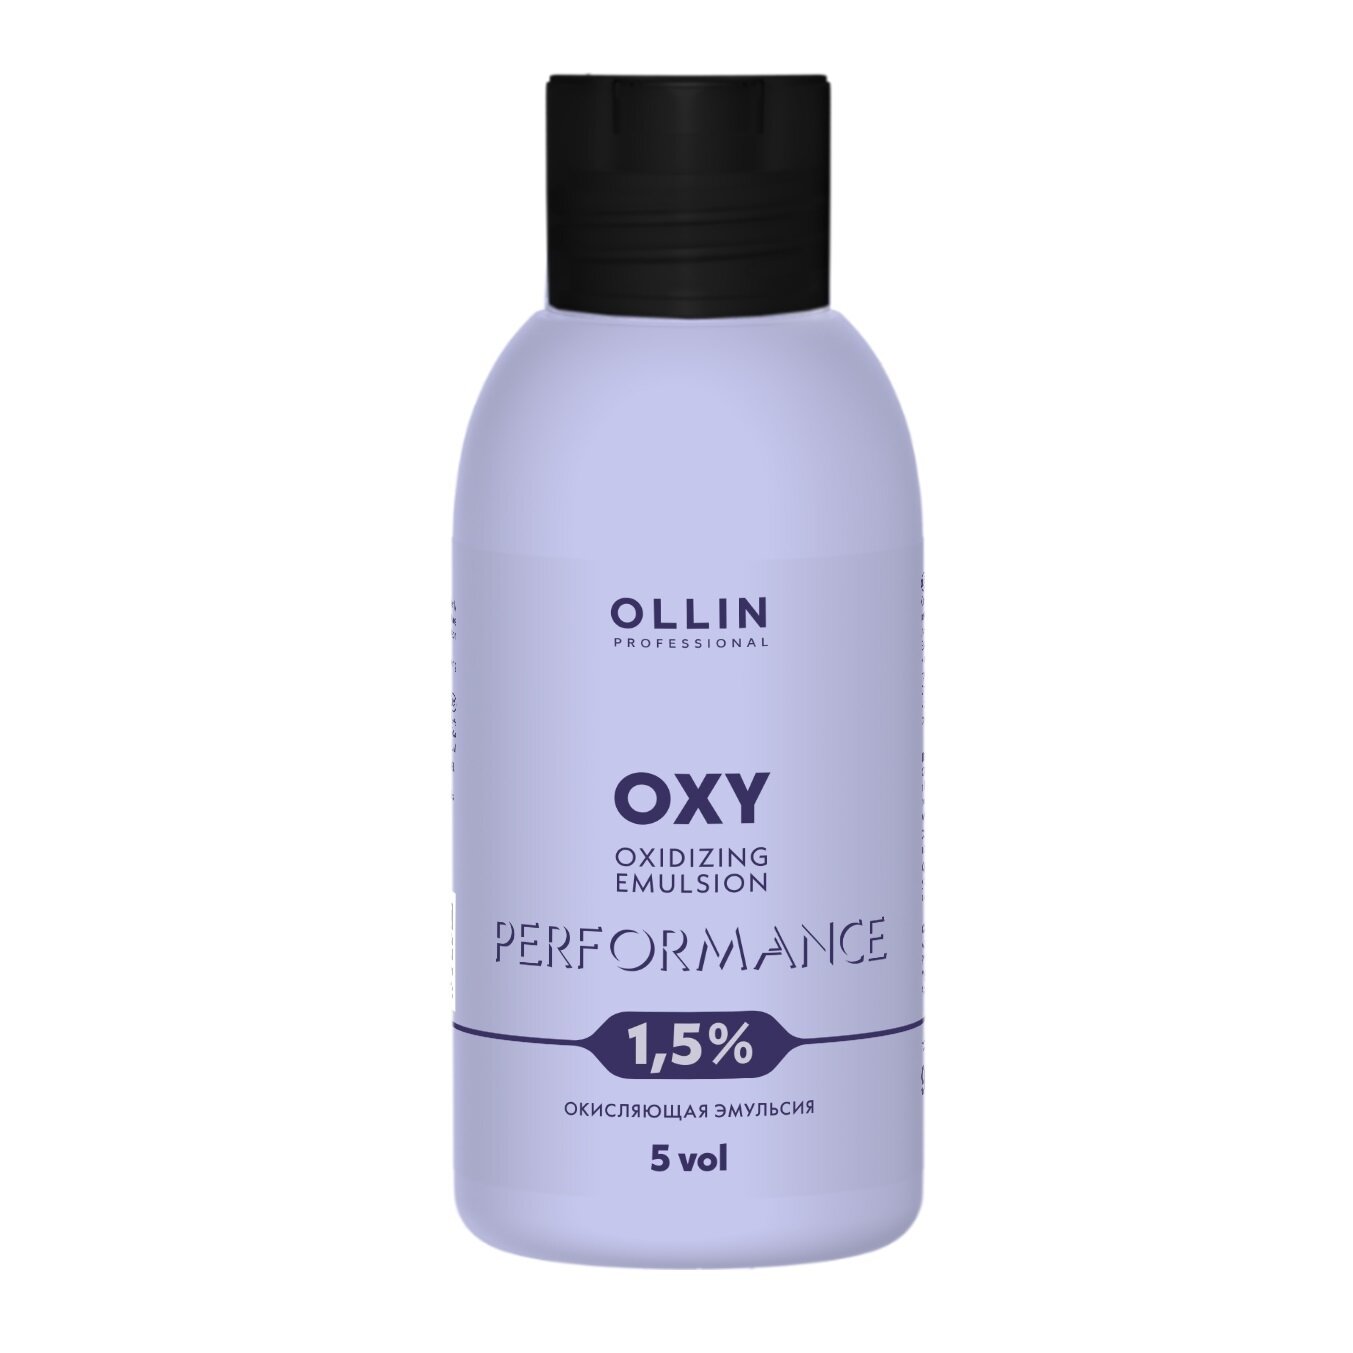 OLLIN performance OXY 1,5% 5vol. Окисляющая эмульсия 90мл/ Oxidizing Emulsion